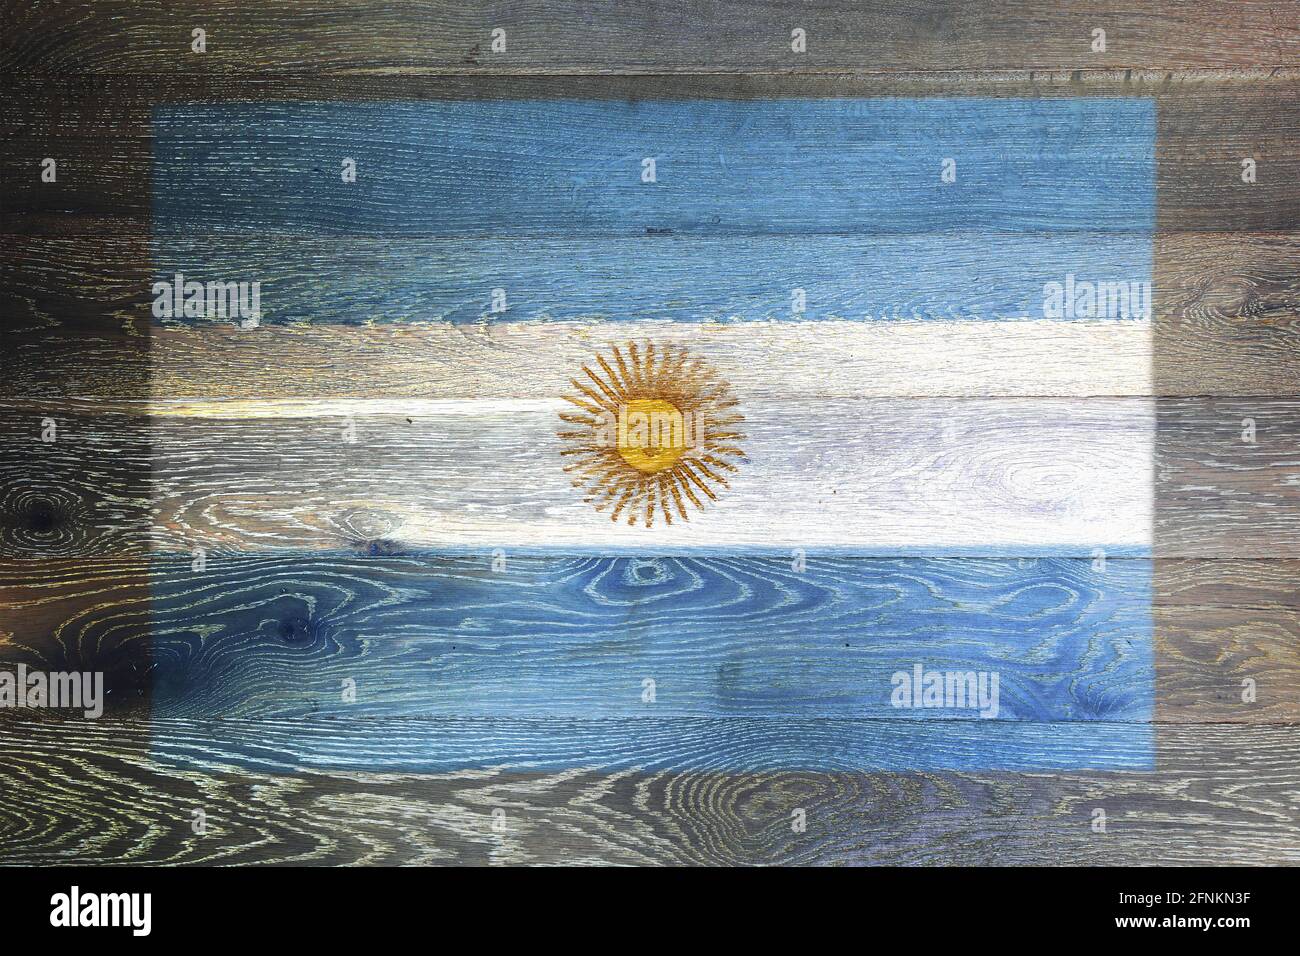 Día De La Bandera Argentina Royalty-Free Images, Stock Photos & Pictures